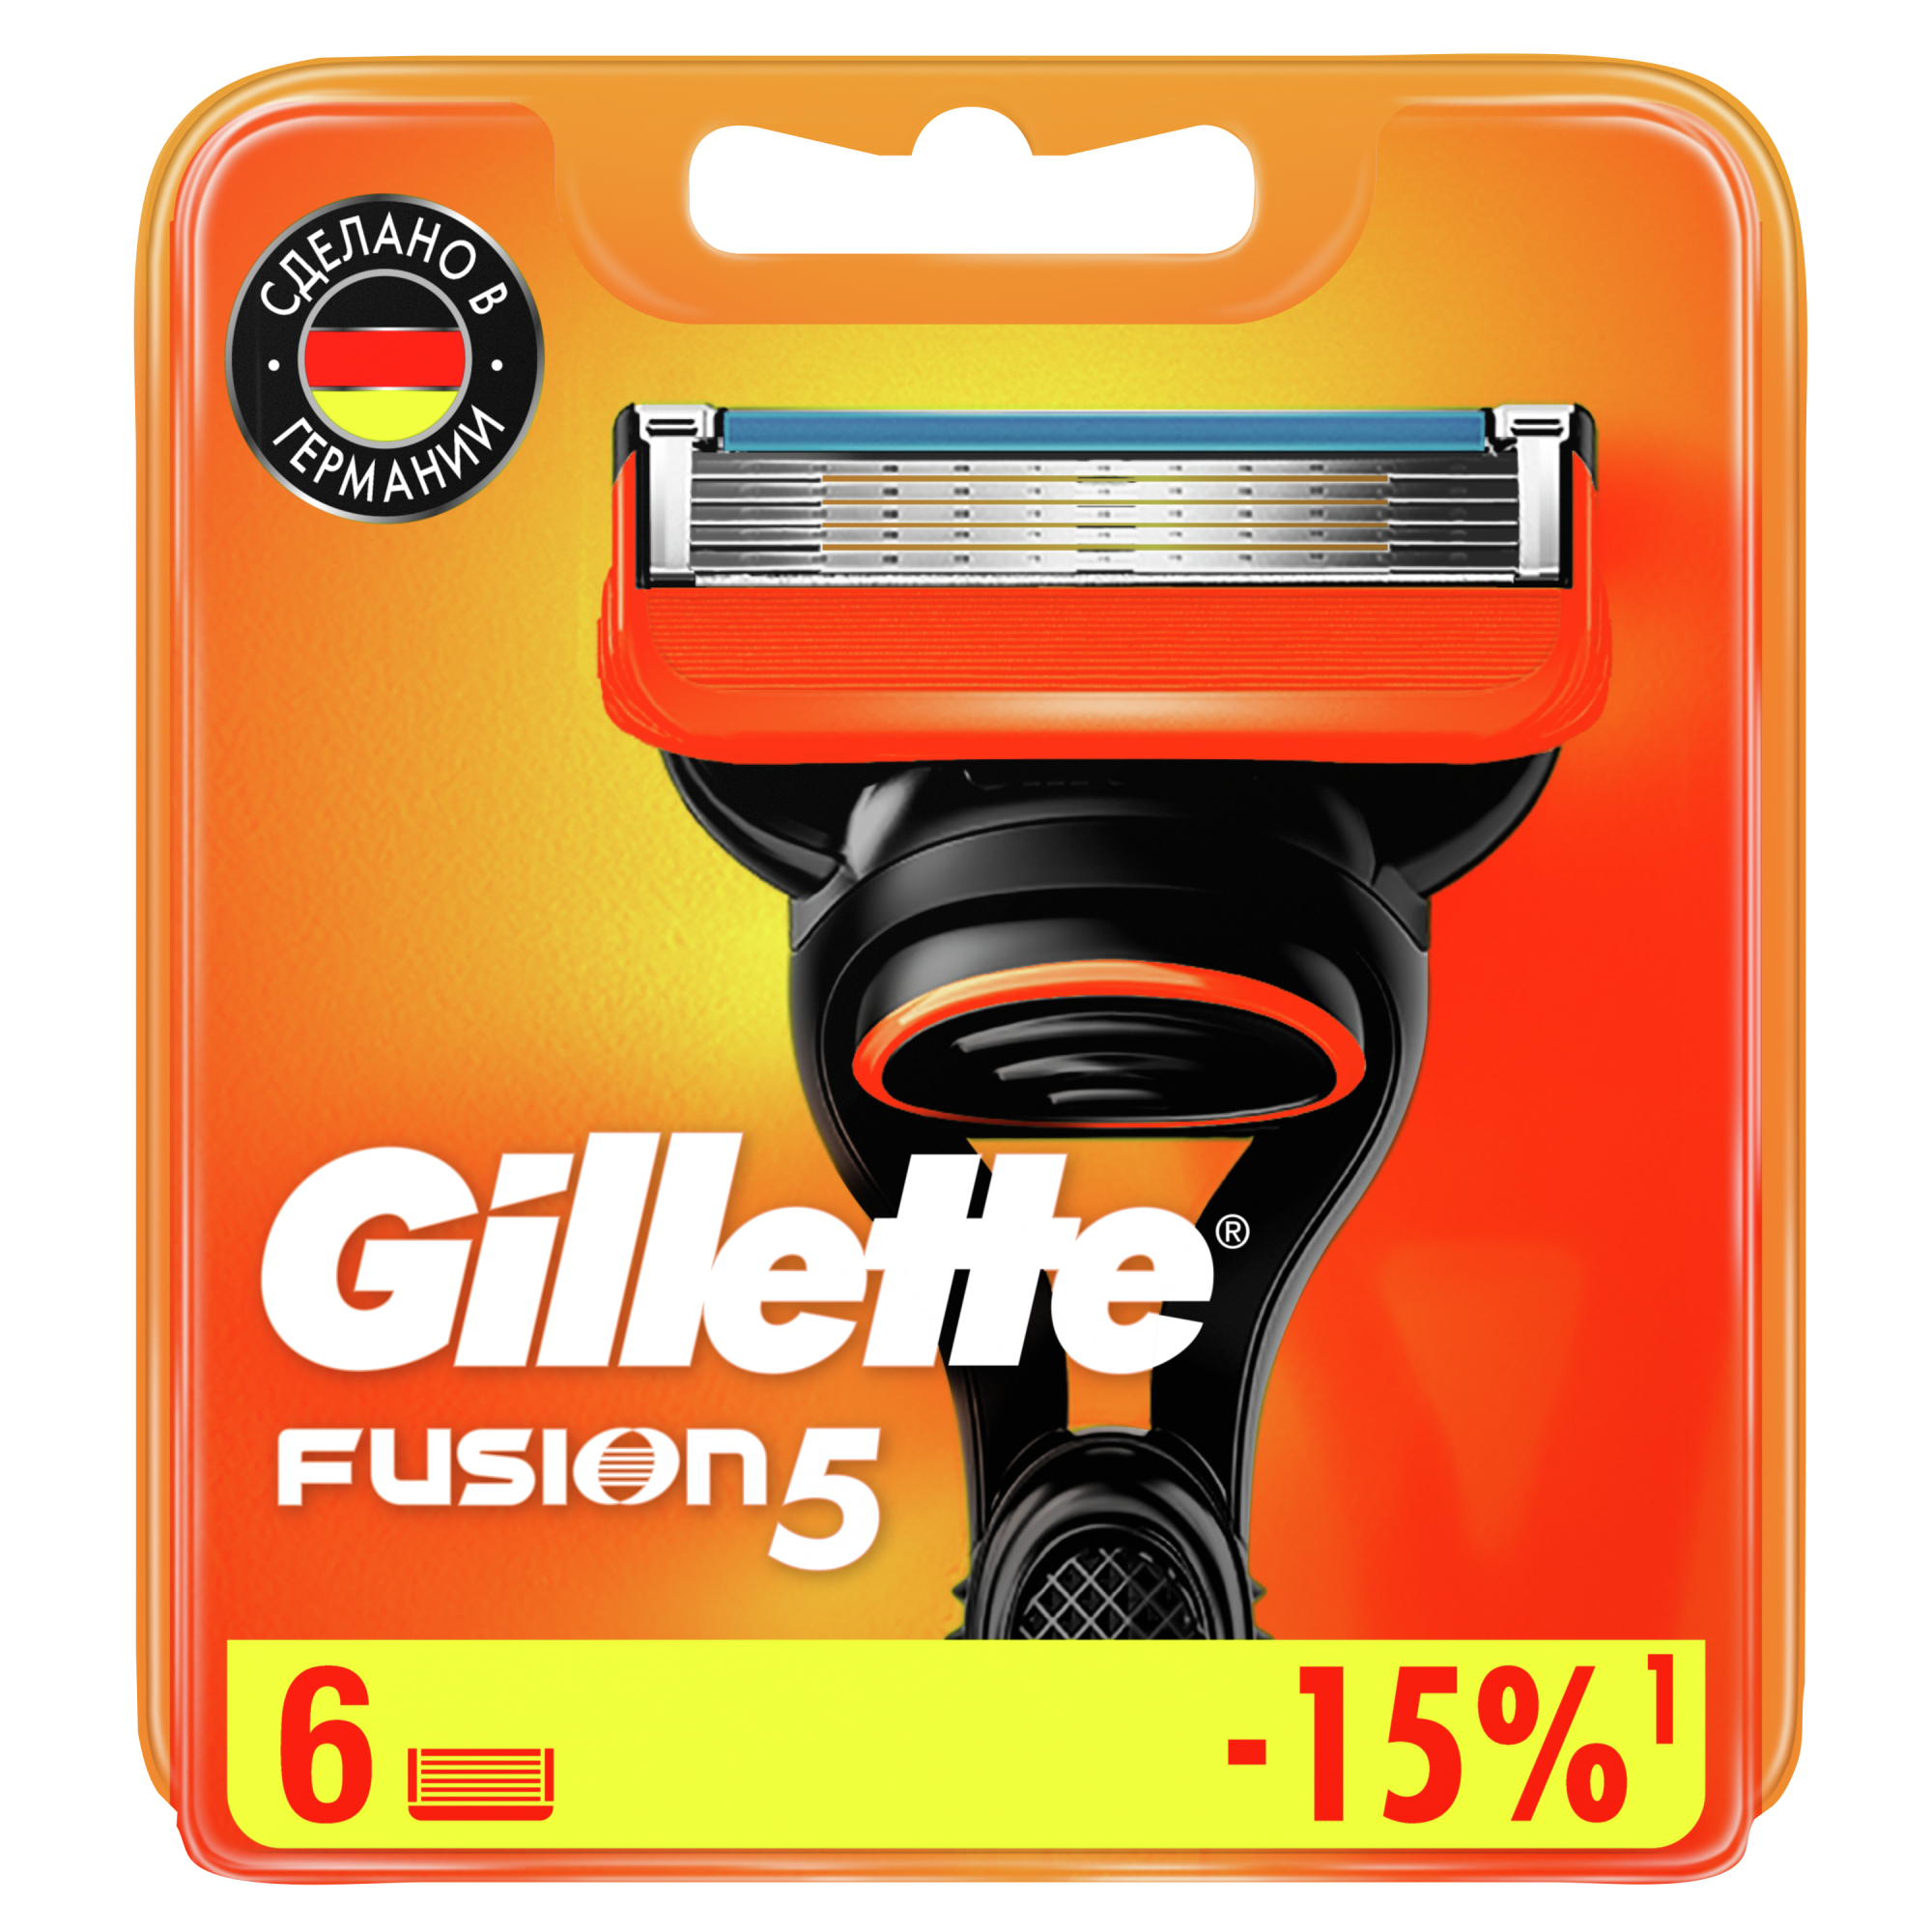 Сменные кассеты для мужской бритвы Gillette Fusion5 Power, с 5 лезвиями, c точным триммером для труднодоступных мест, для гладкого бритья надолго, 6 шт кассеты для бритья gillete slalom 5 шт со смазывающей полоской